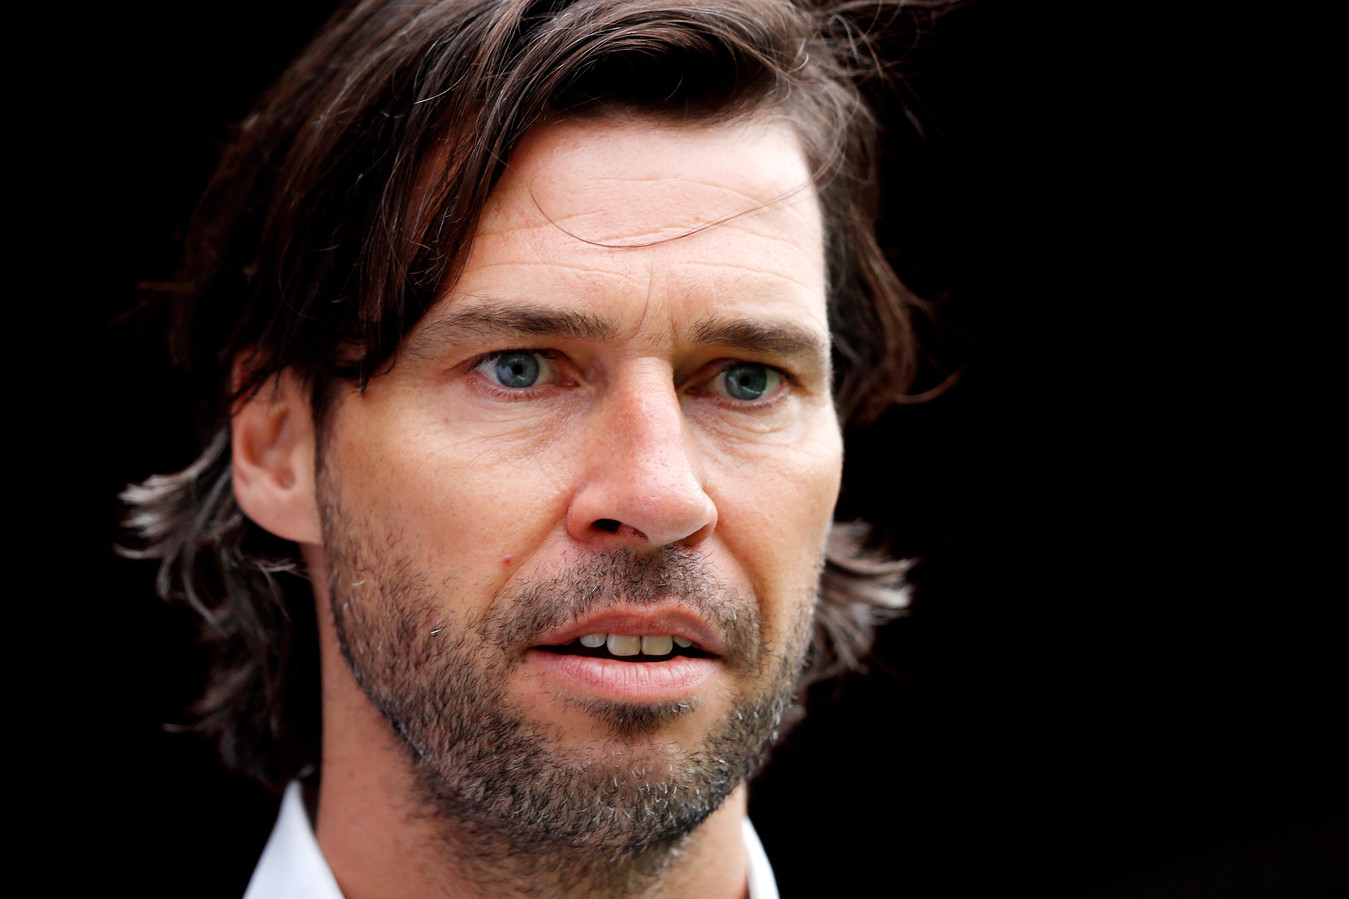 Het zijn drukke weken voor PSV’s technisch manager John de Jong.